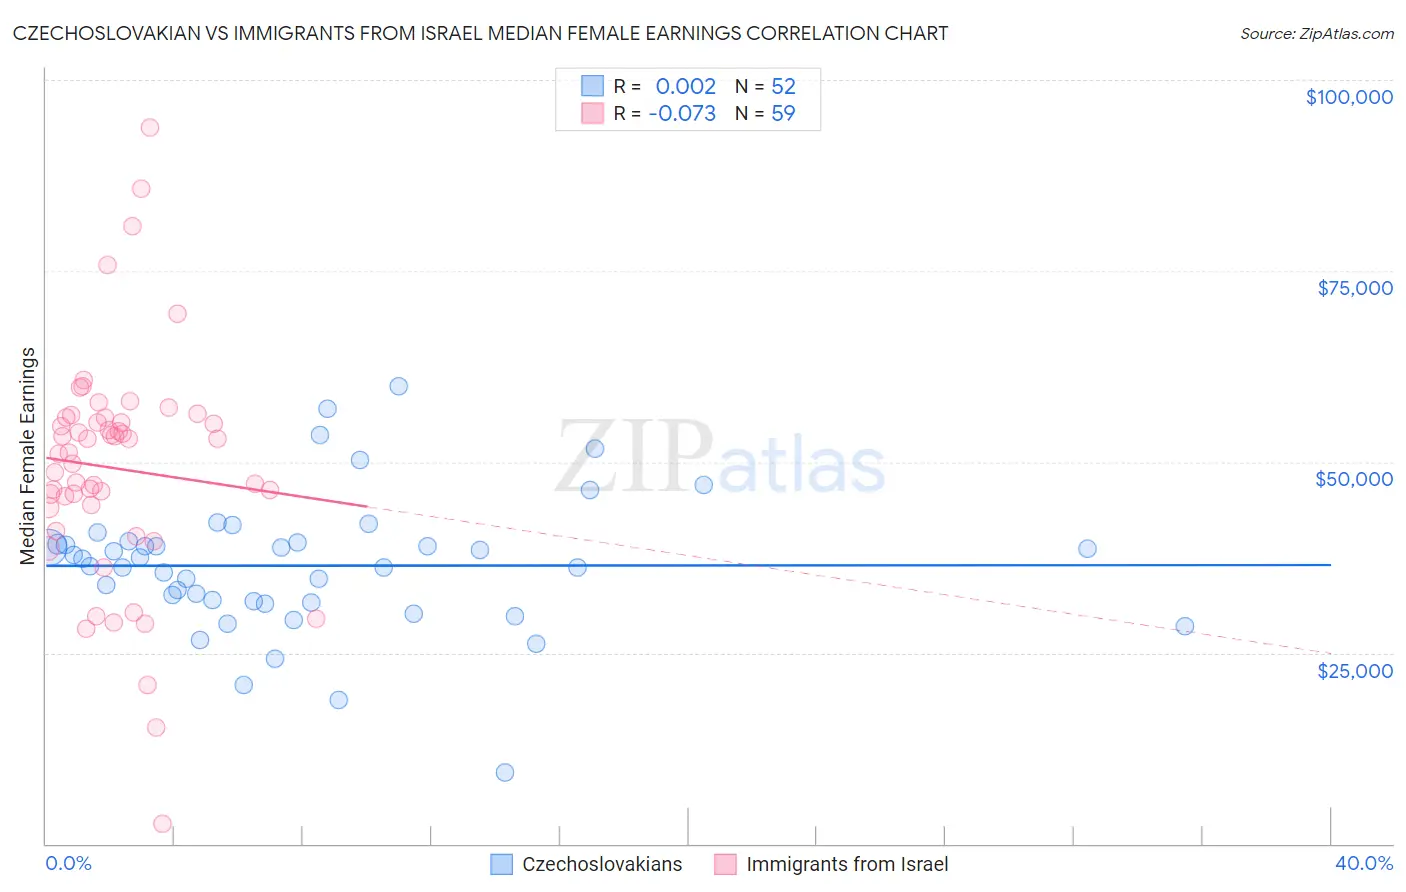 Czechoslovakian vs Immigrants from Israel Median Female Earnings